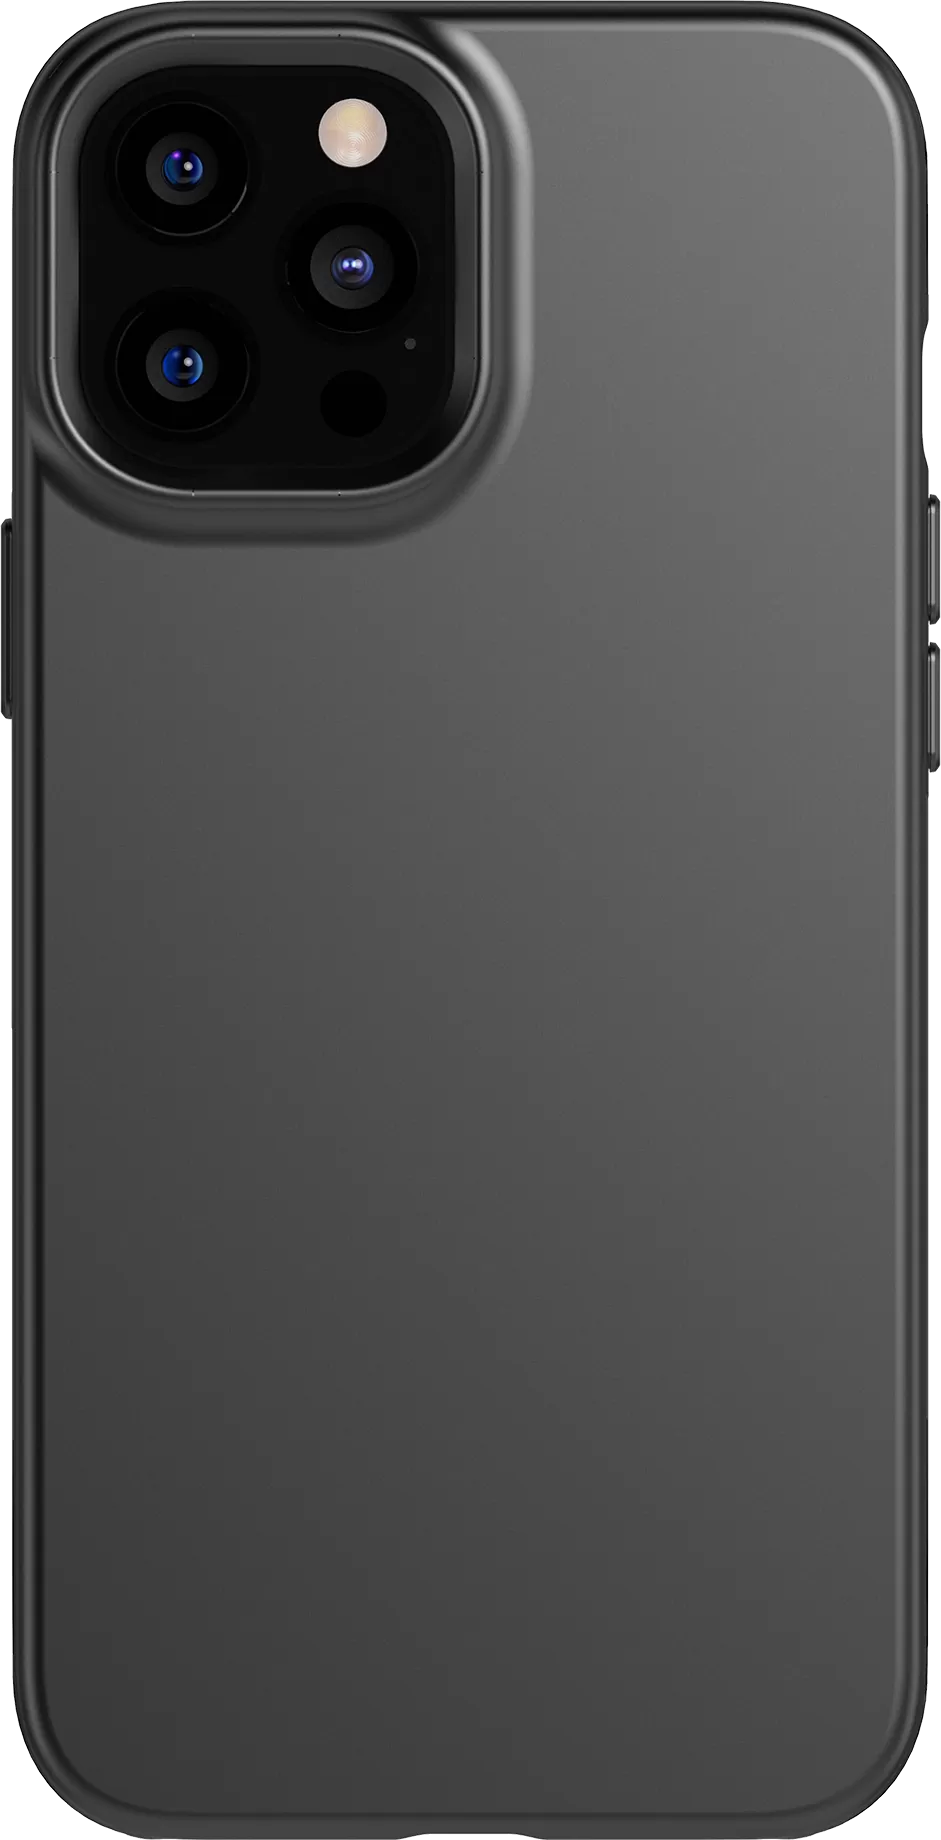 Tech21 Evo Slim Case for iPhone 12 Pro Max